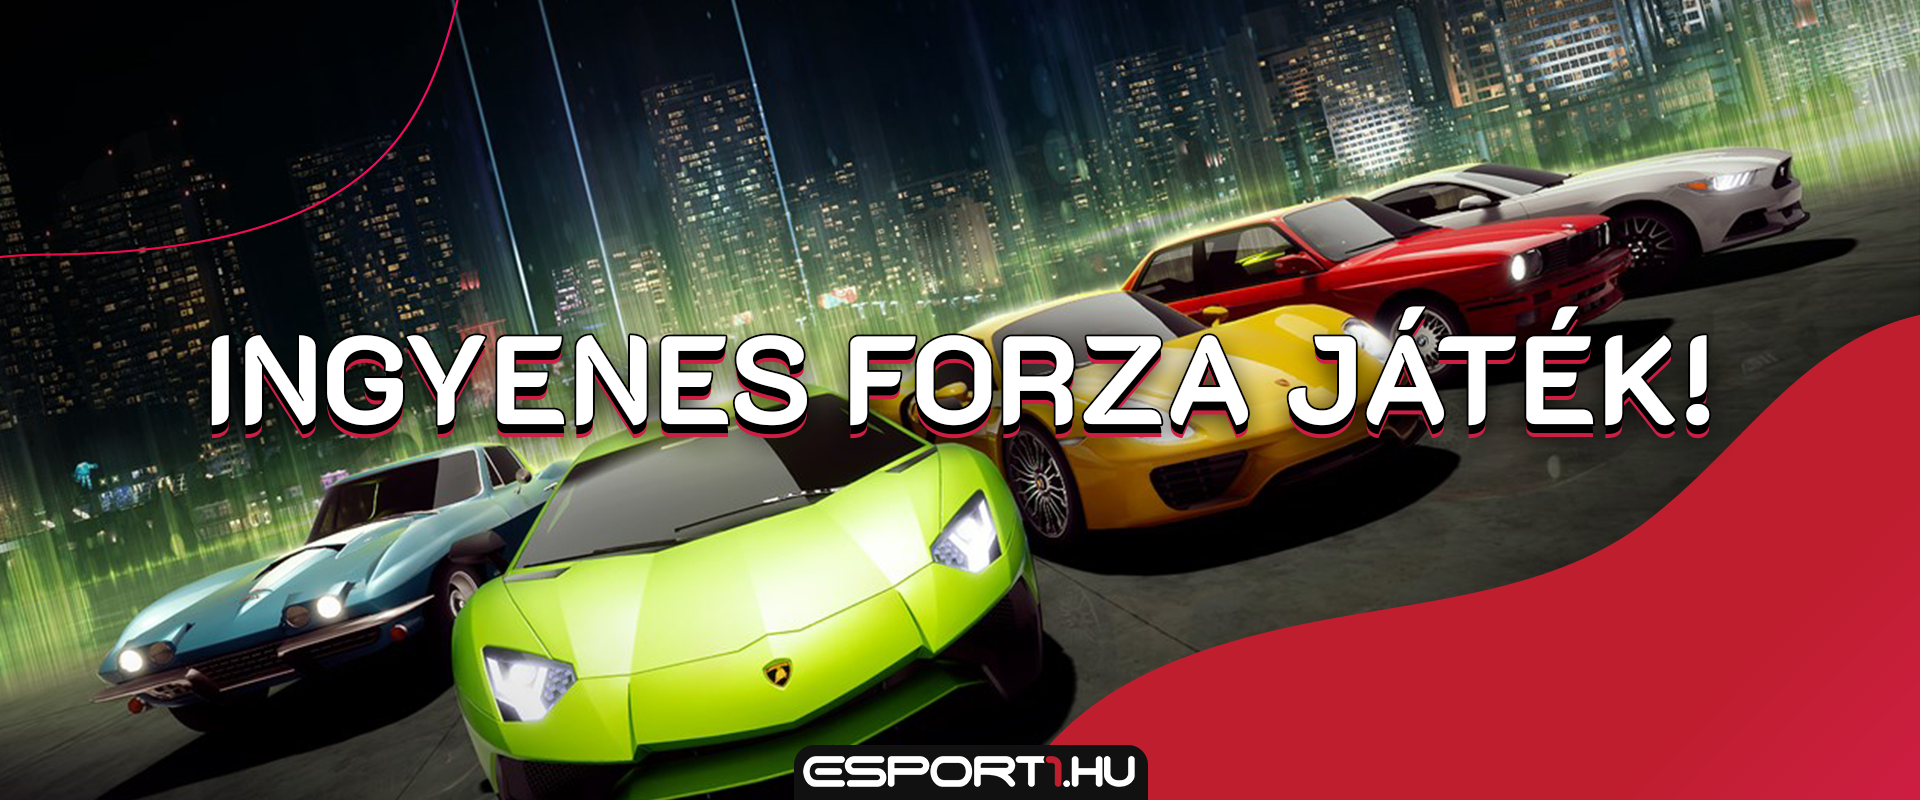 Ingyen tölthető a Forza Street, a legújabb Forza játék!